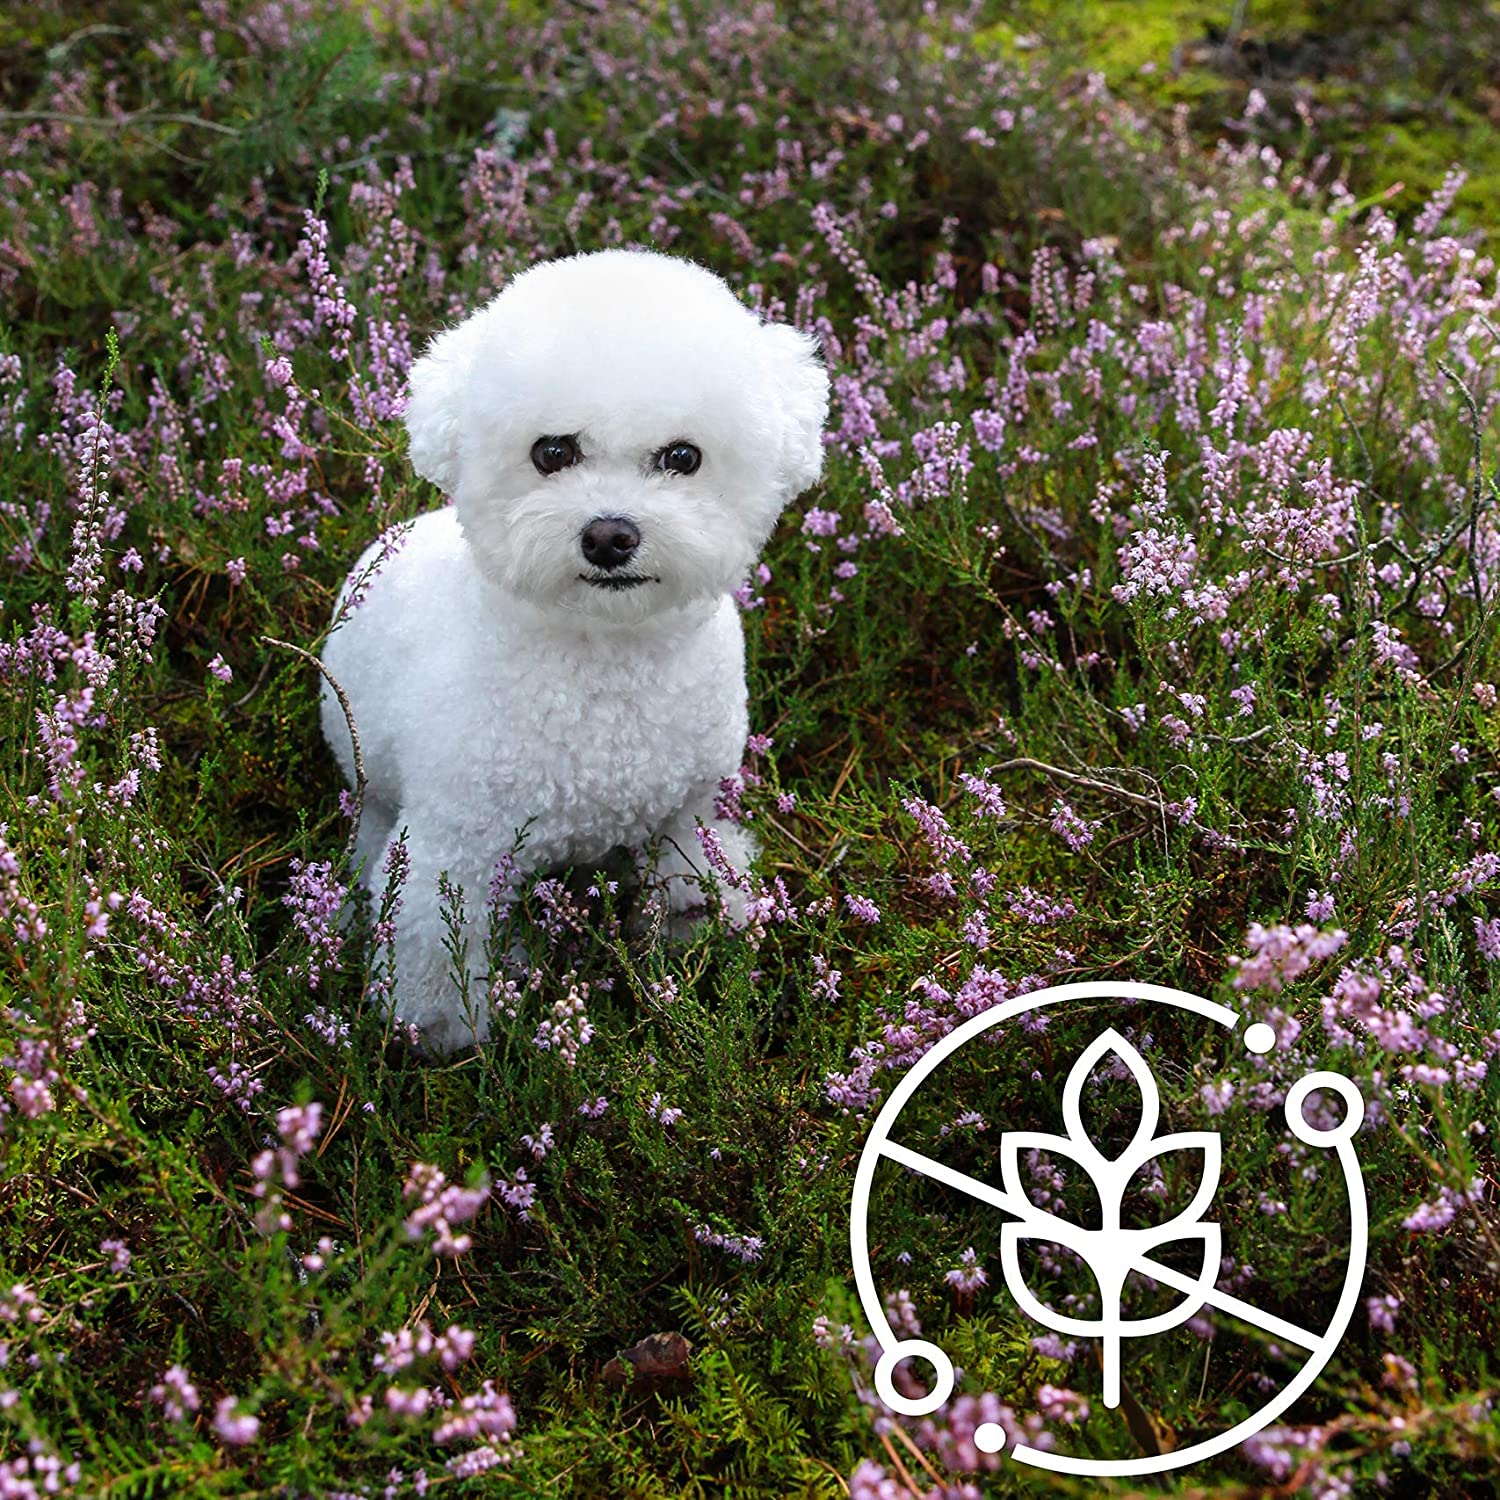 Nature's Protection Superior Pflege weiße Hunde Lamm Futter für erwachsene Hunde kleinen und Mini Rassen